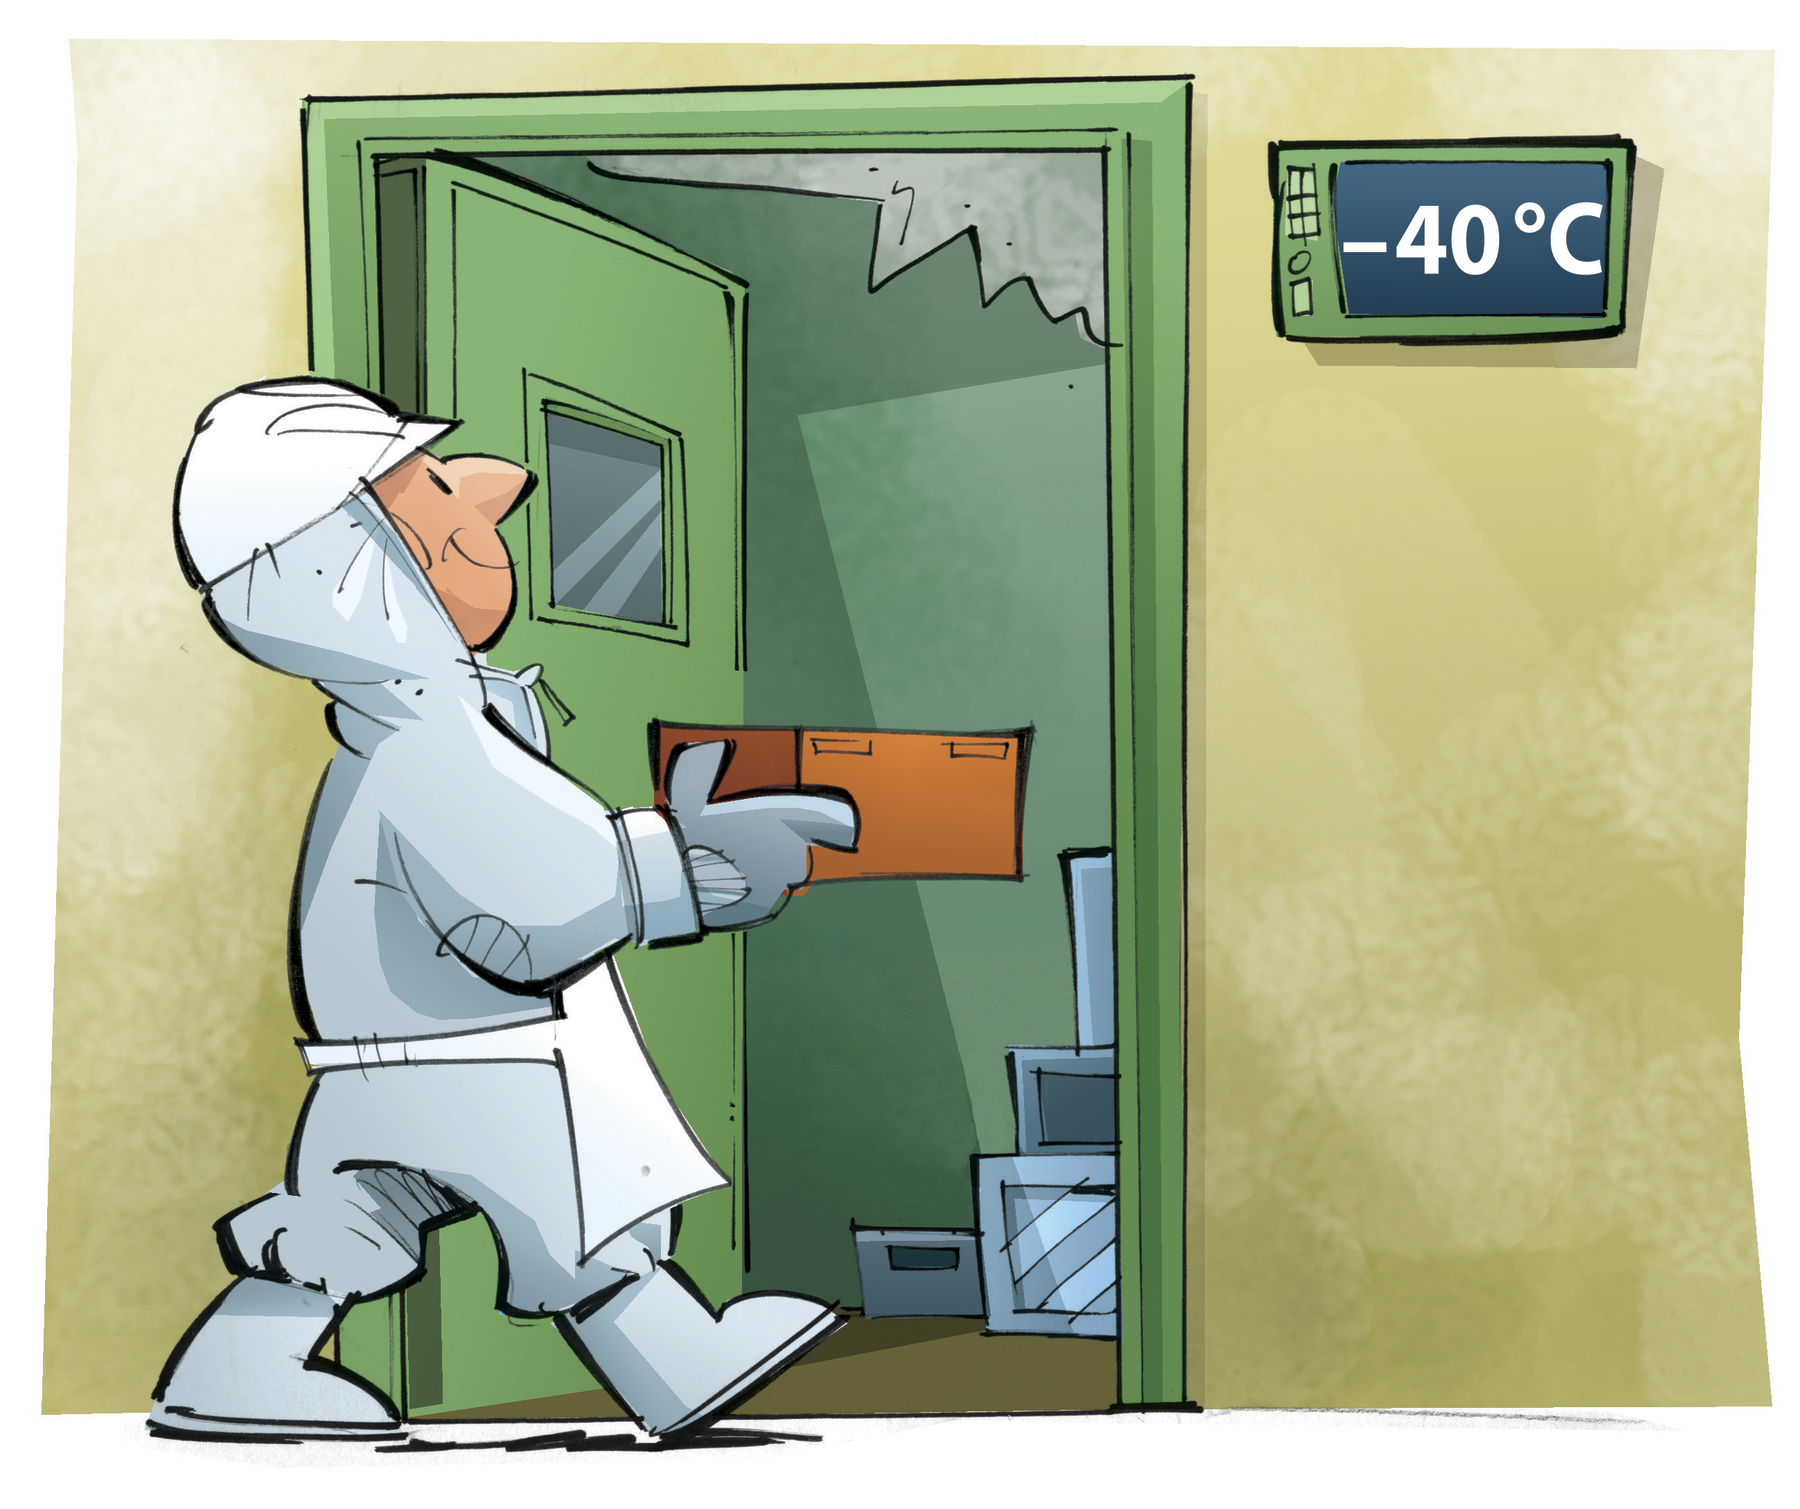 Ilustração. Um homem utilizando trajes para se proteger do frio caminhando em direção a uma câmara fria com uma caixa. Ao lado da porta da câmara fria há a indicação da temperatura: menos 40 graus Celsius.